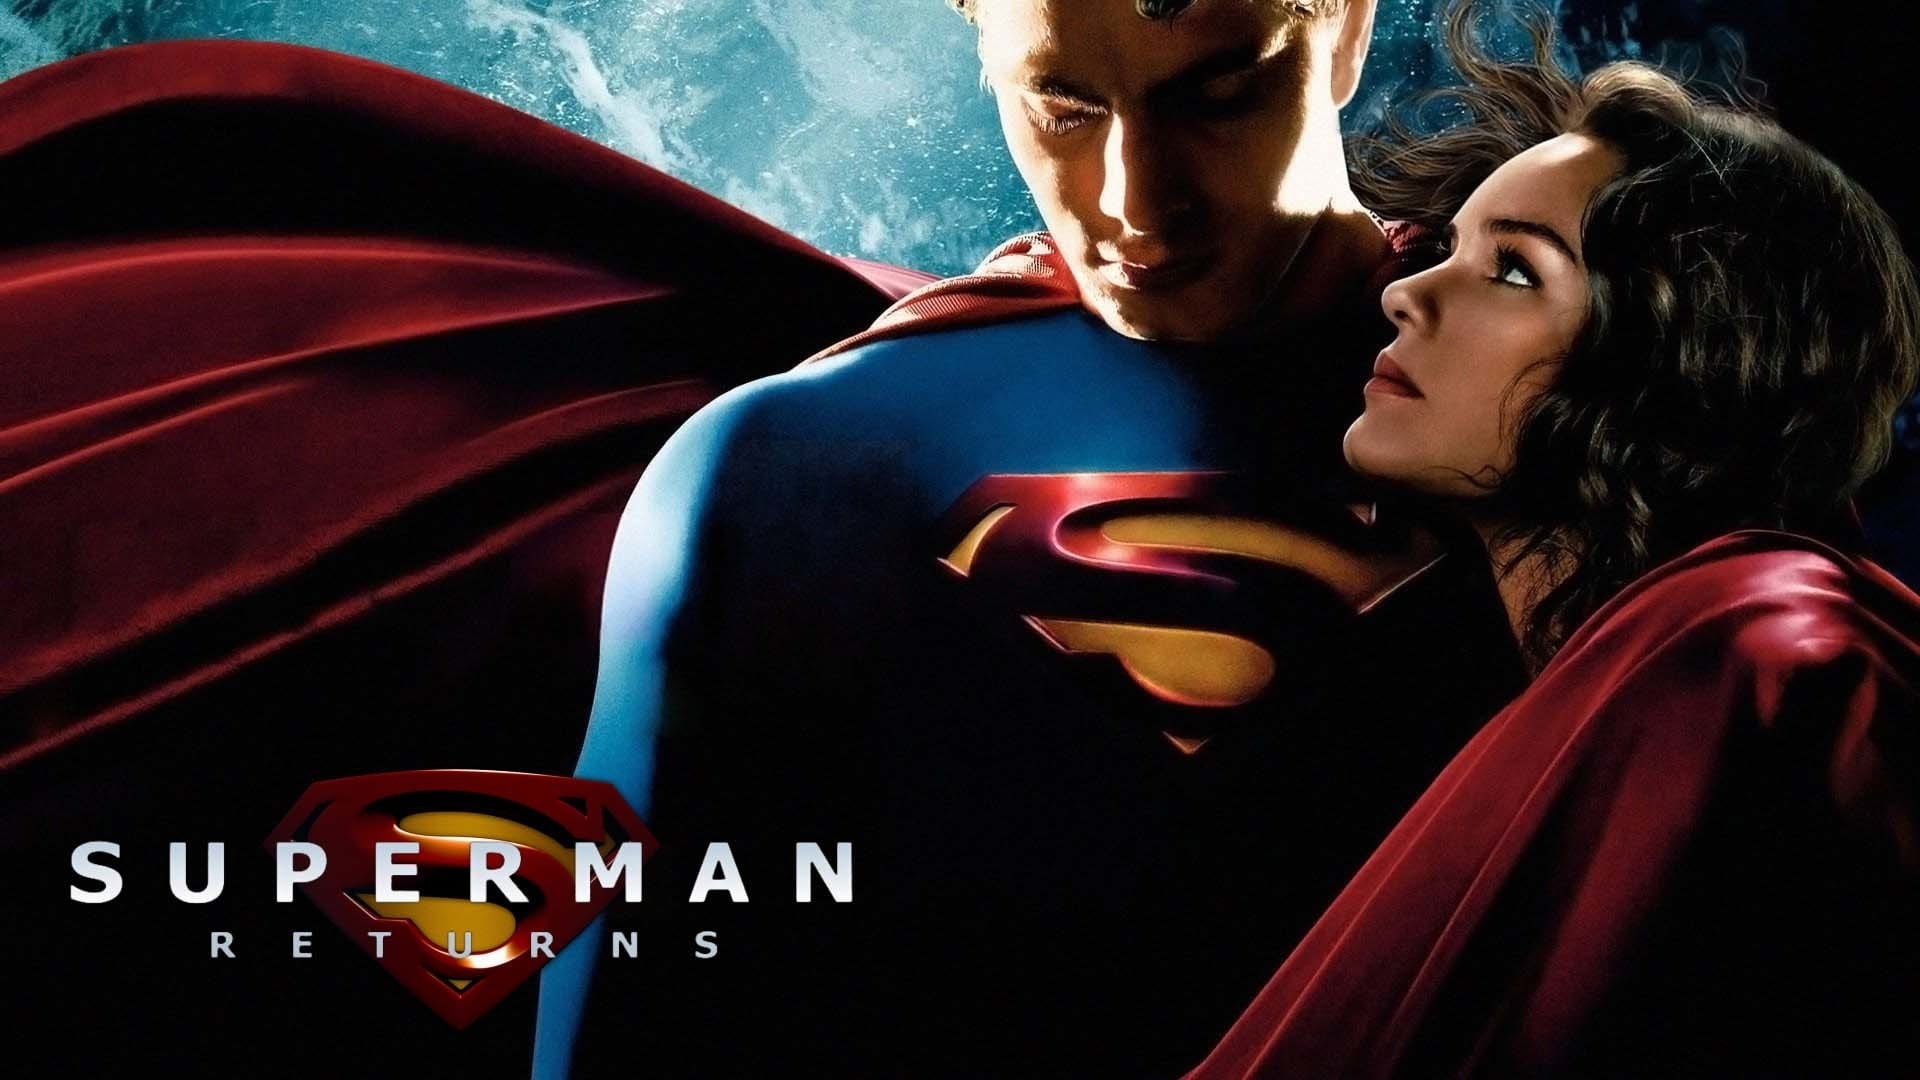 Superman: Powrót (2006)